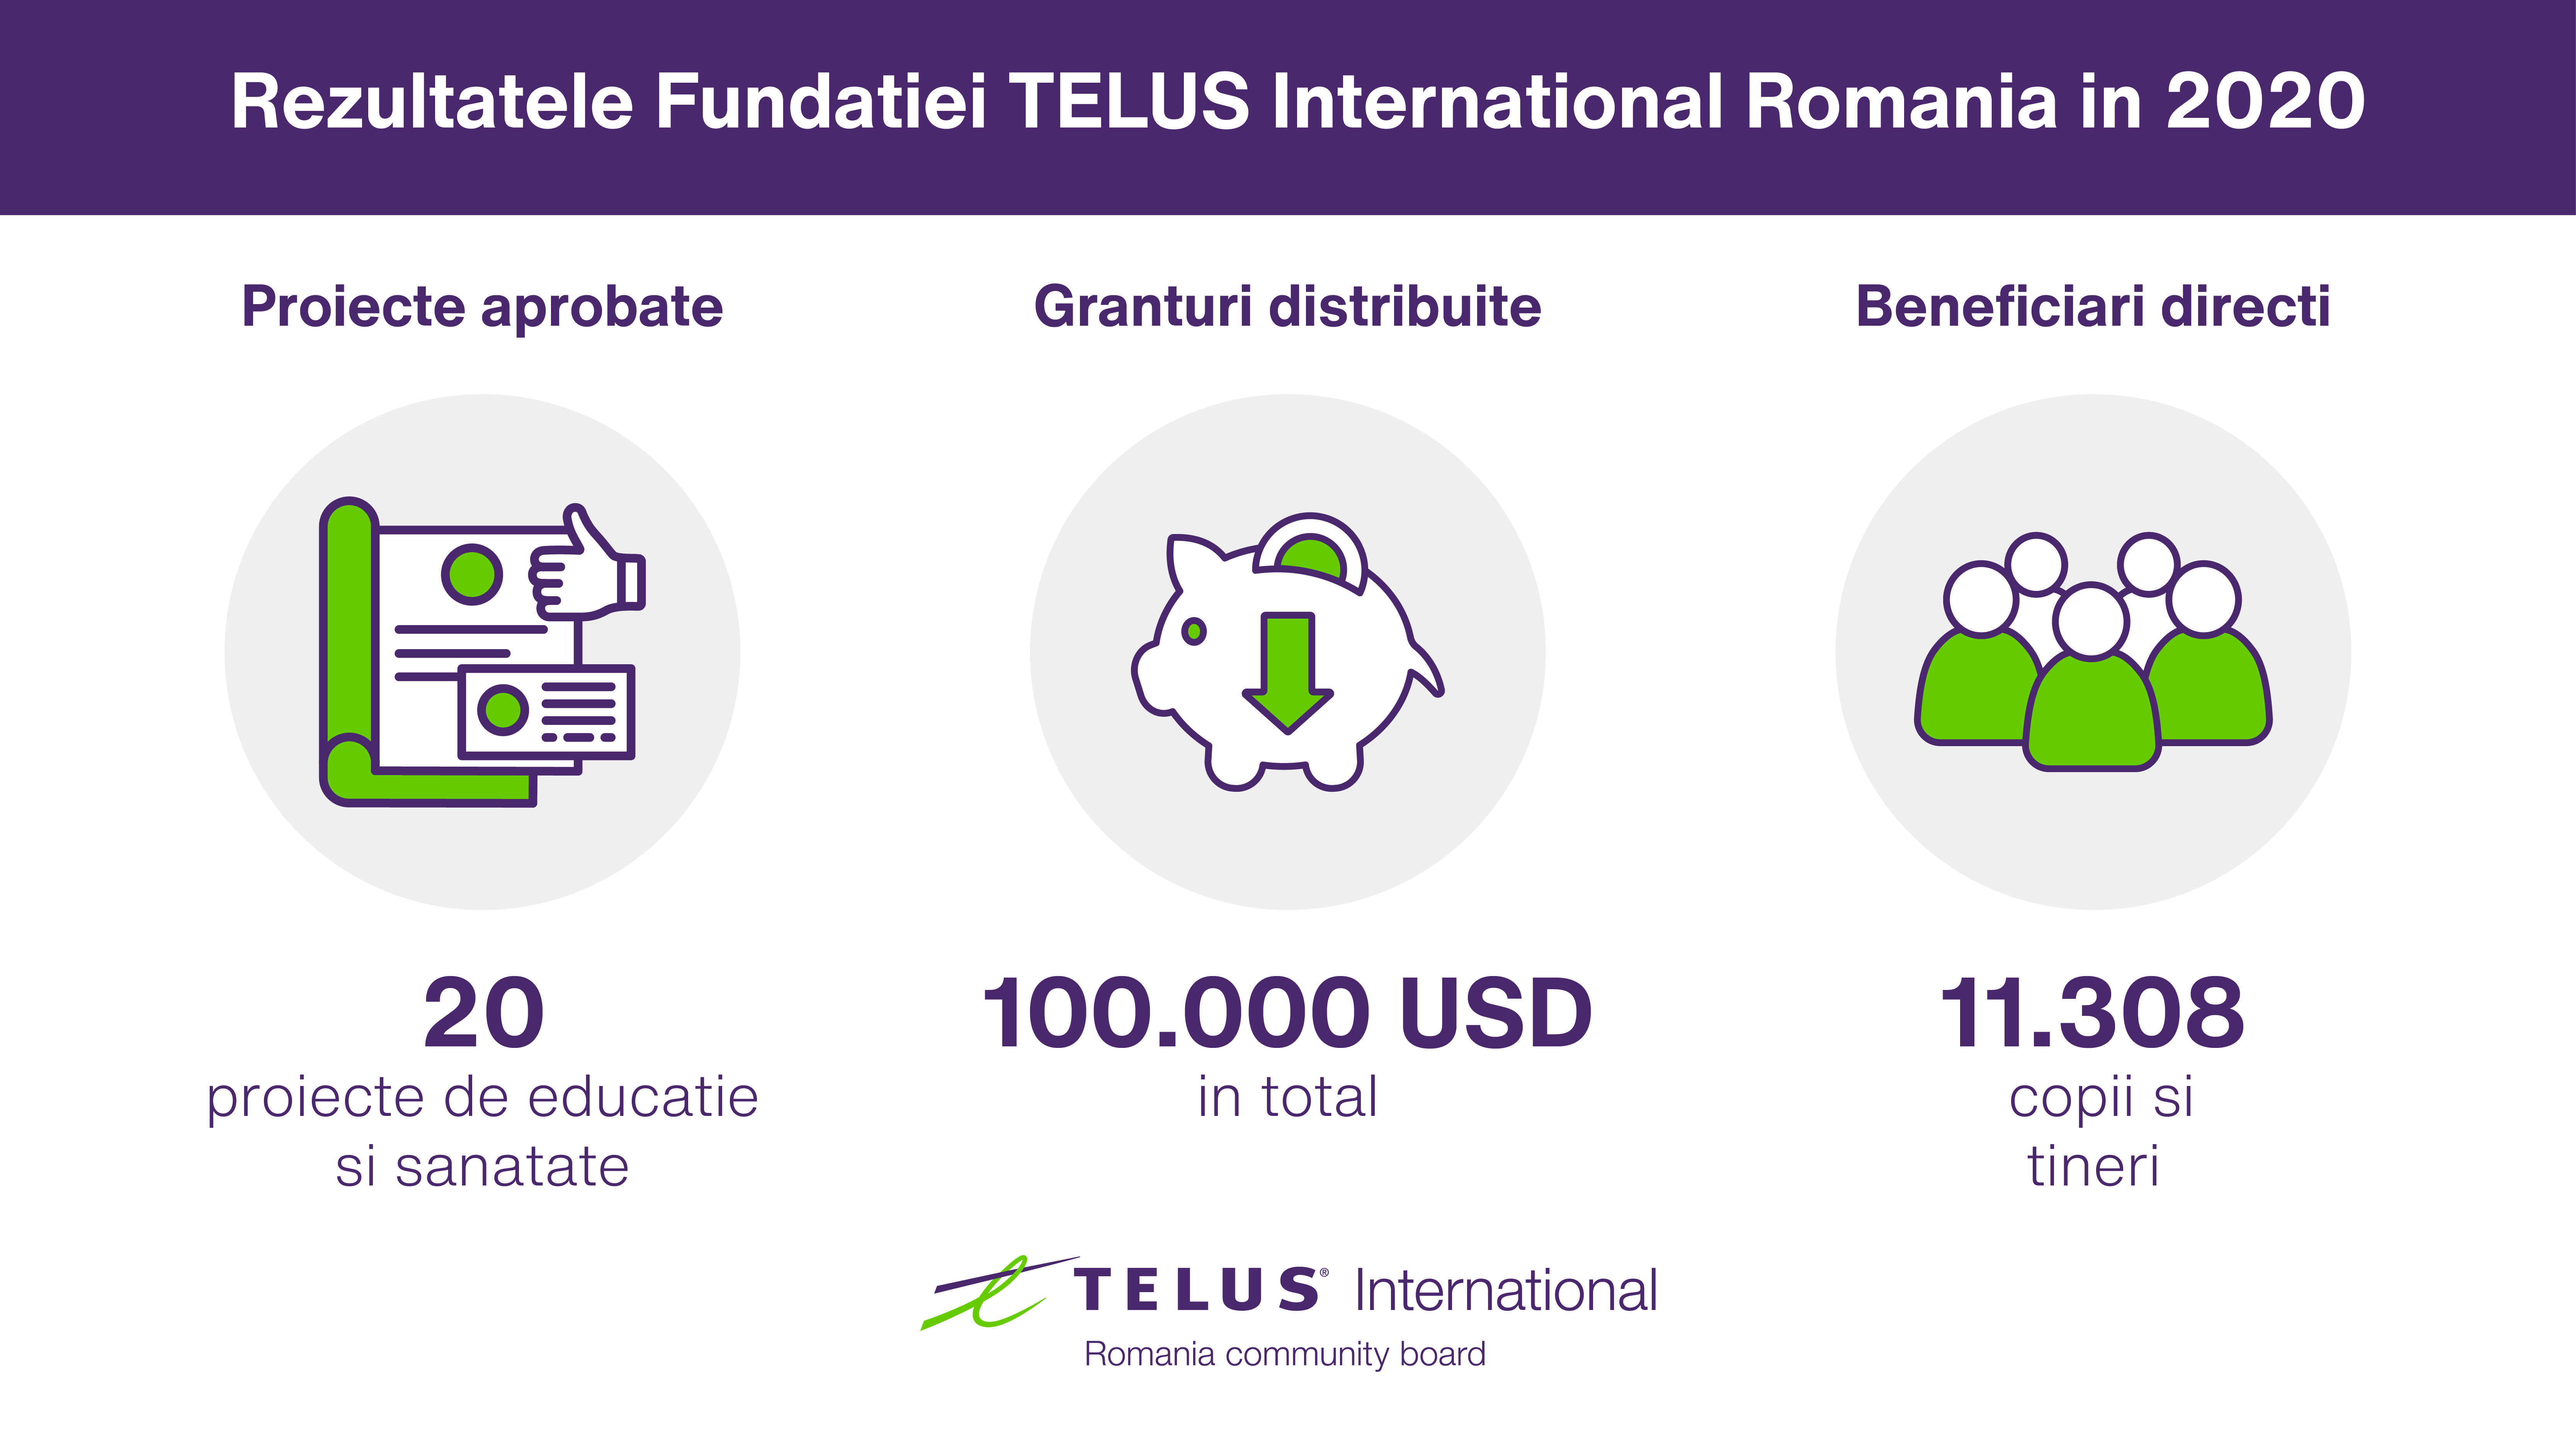 Fundația TELUS International Romania continuă să susțină ONG-urile locale cu o finanțare totală de 100.000 USD în 2021